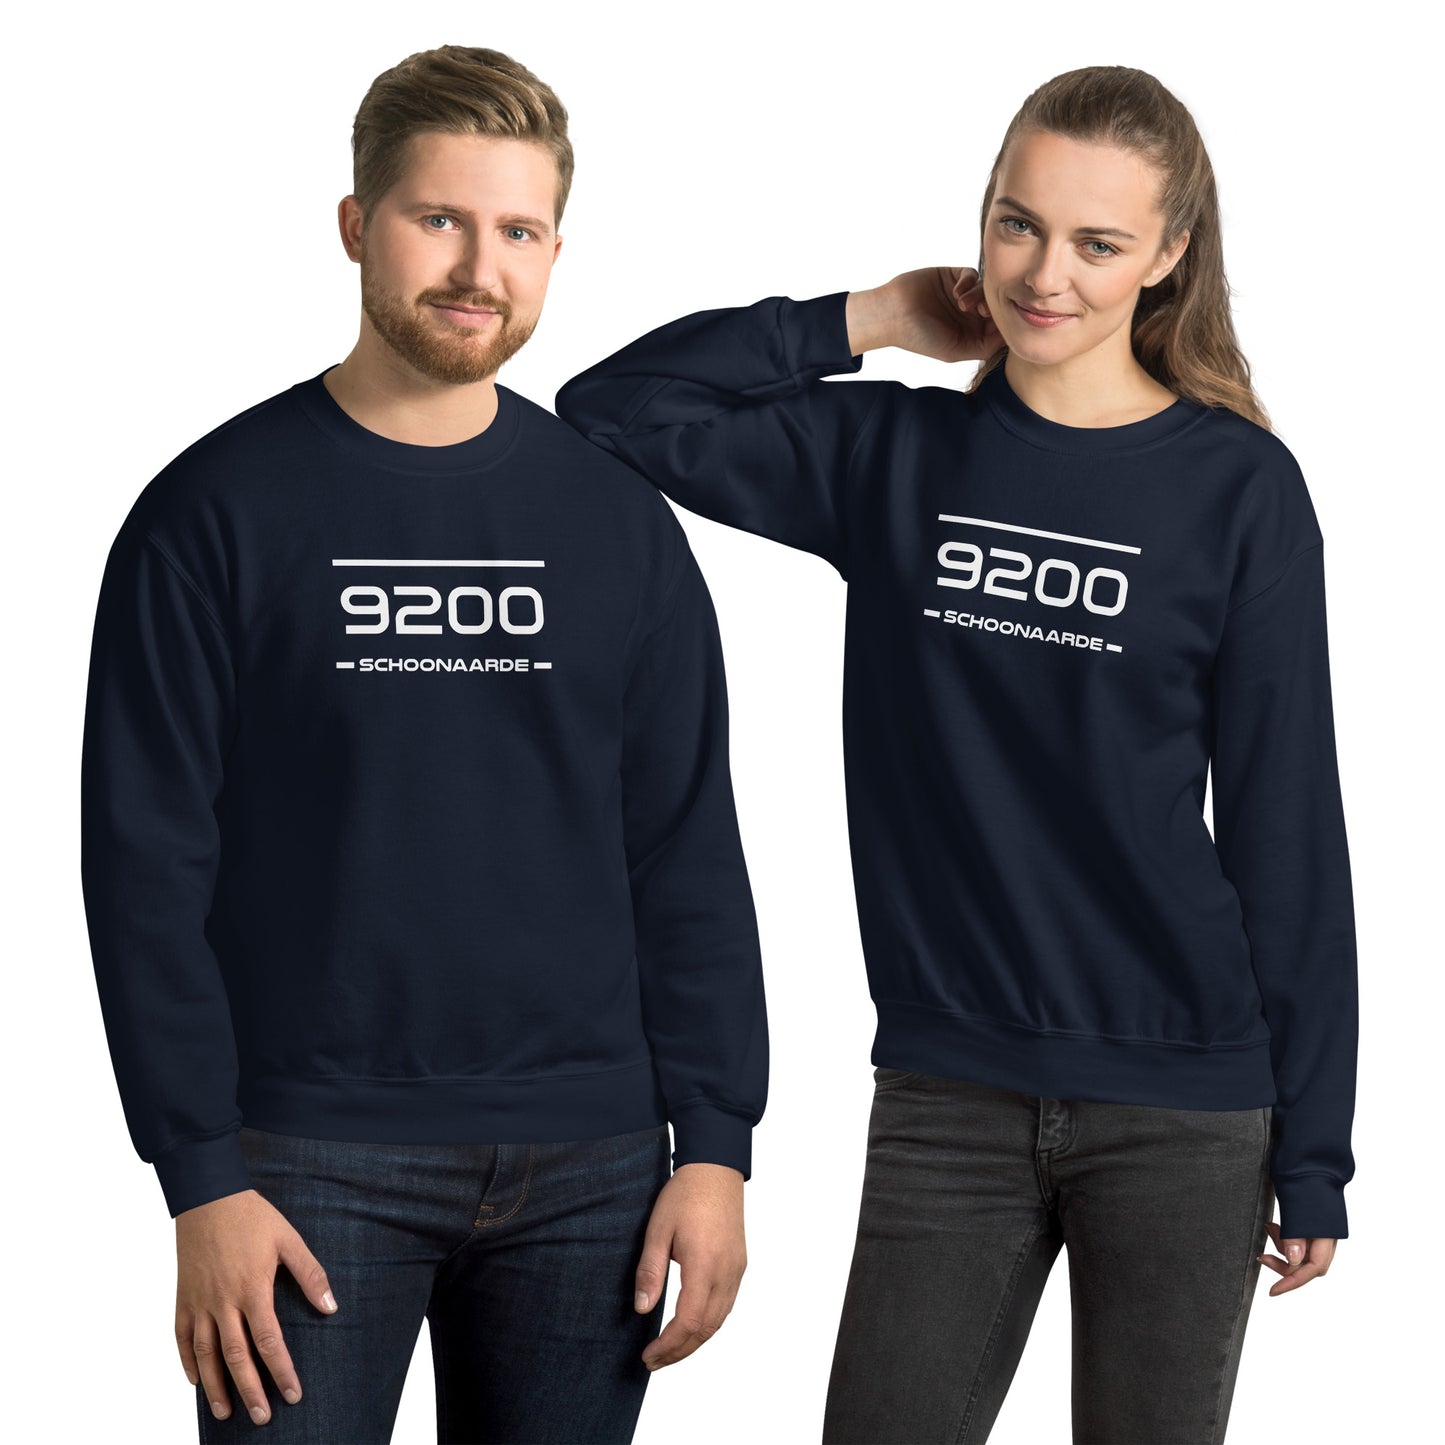 Sweater - 9200 - Schoonaarde (M/V)